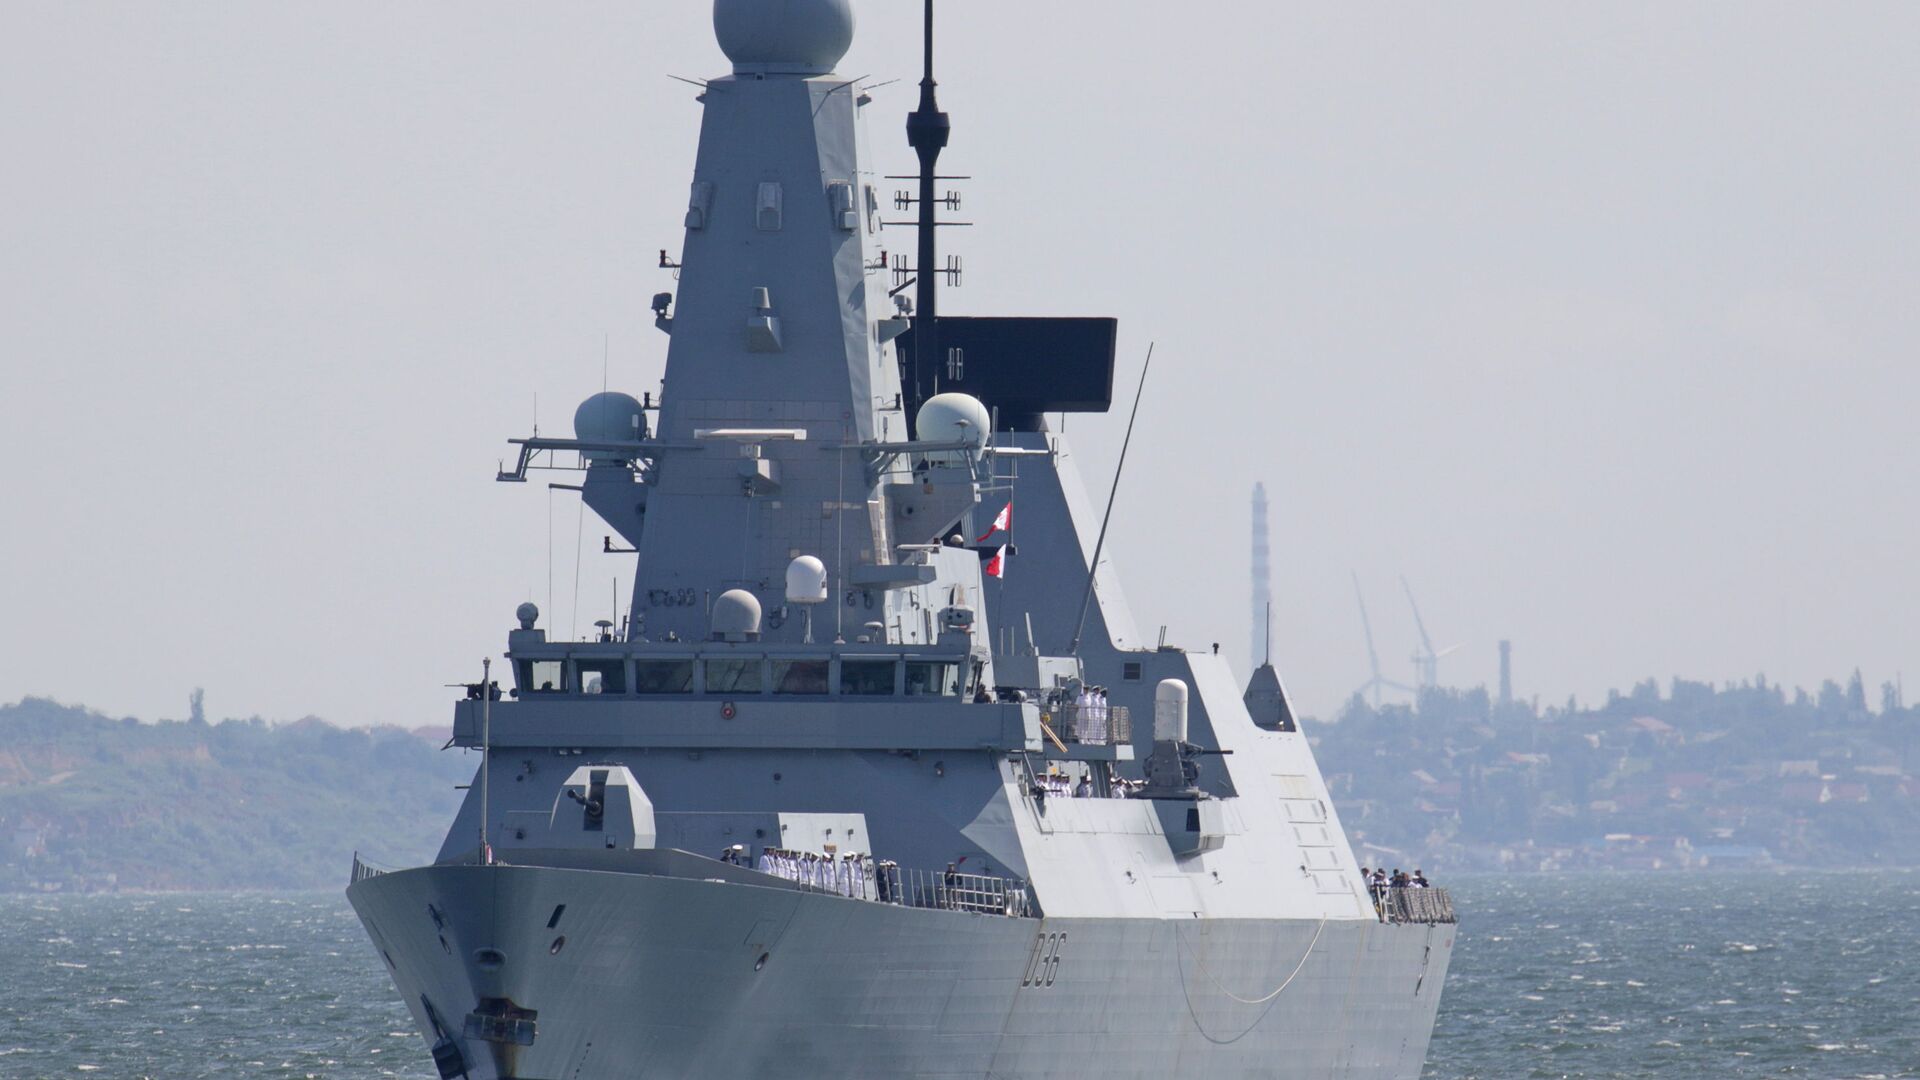 Razarač tipa HMS „Defender“ britanske kraljevske mornarice stiže u crnomorsku luku Odesa, Ukrajina, 18. juna 2021. - Sputnik Srbija, 1920, 13.04.2022